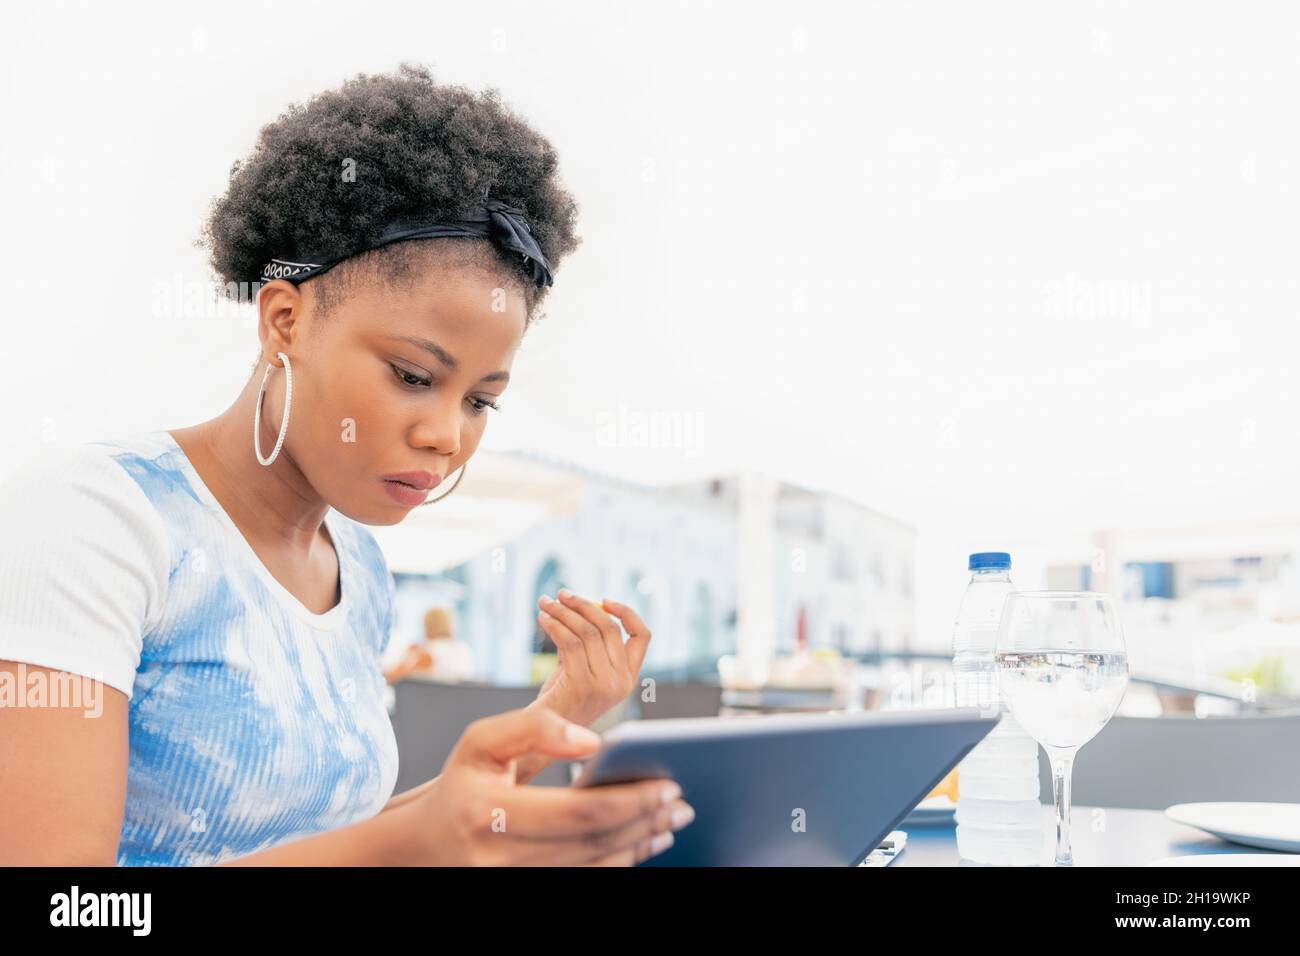 Eine seriöse Erwachsene Frau, die auf einem Restaurant im Freien sitzt und ihr digitales Tablet benutzt und anschaut Stockfoto